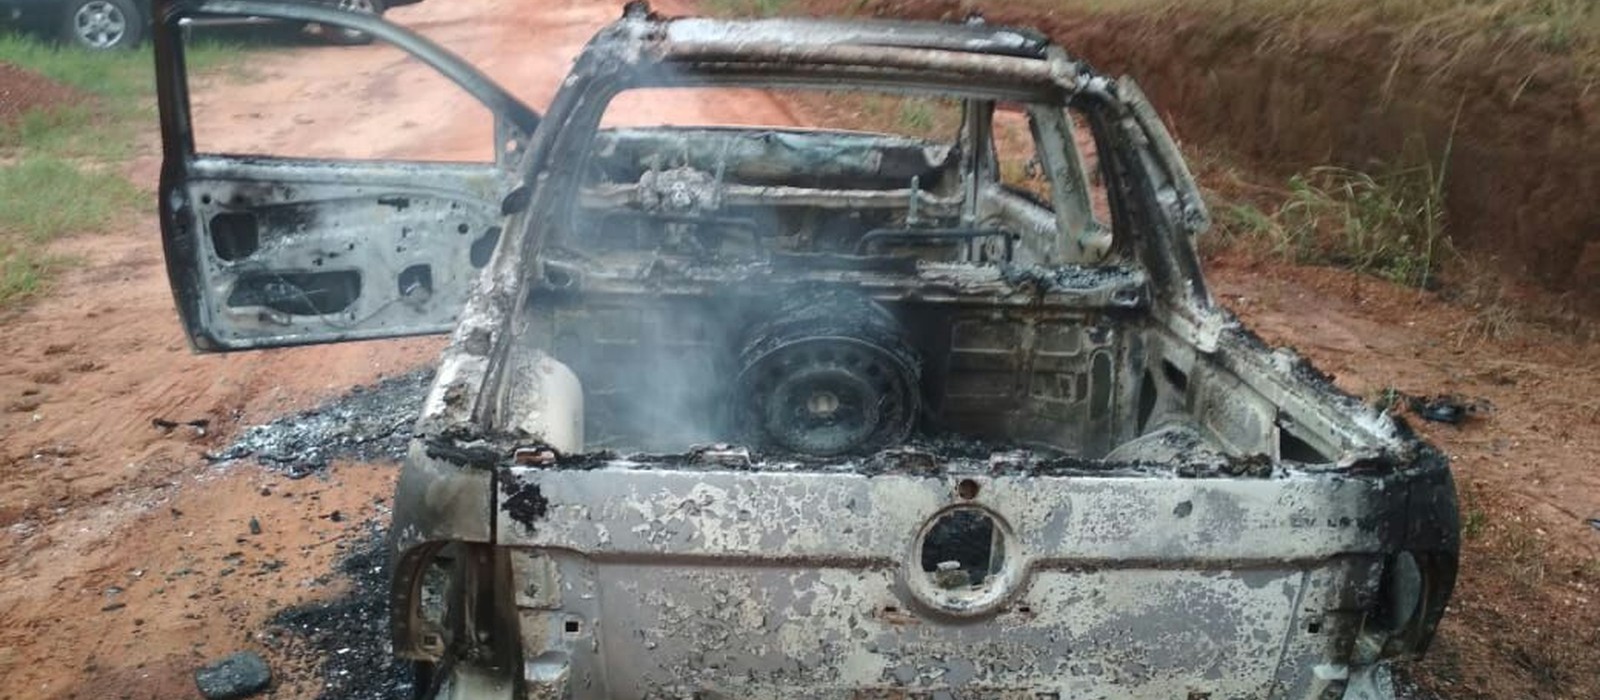 Caminhonete é encontrada incendiada em Altônia com dois corpos carbonizados